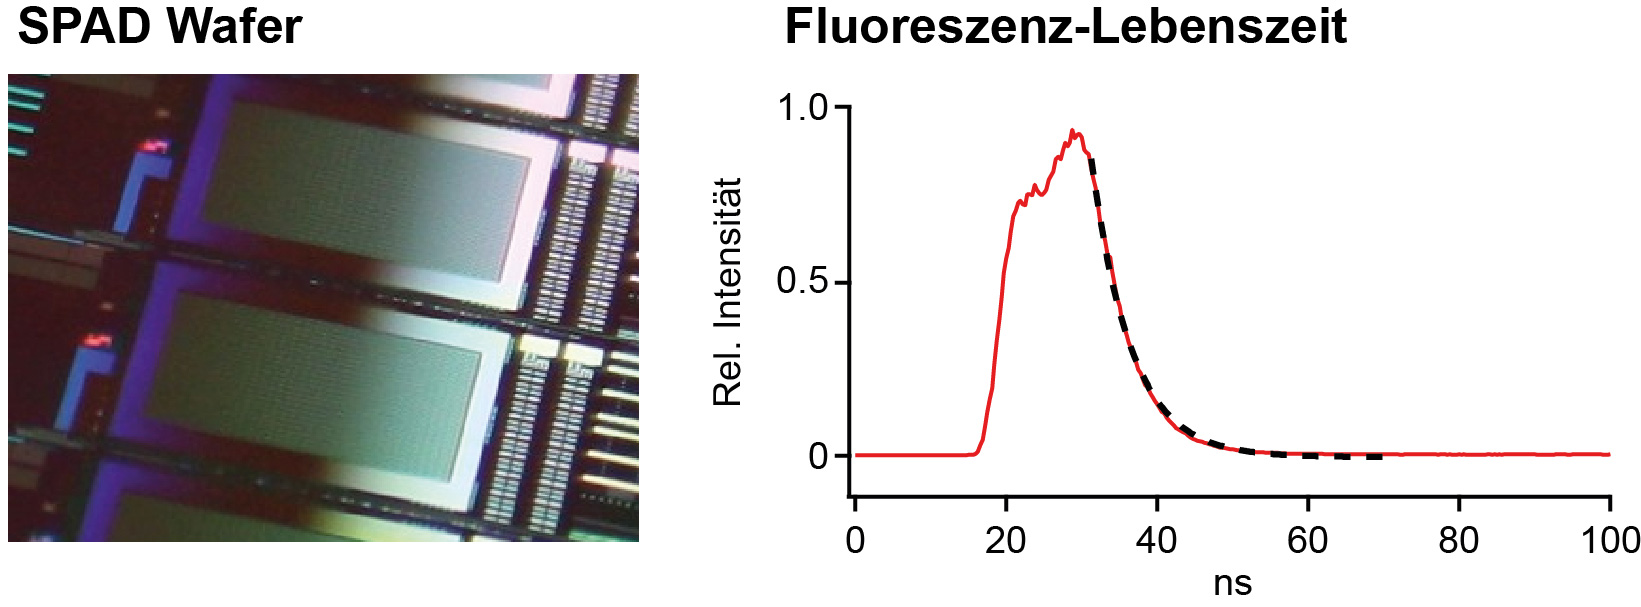 Bild eines SPAD-Wafers und einer Fluoreszenzlebenszeit-Messung